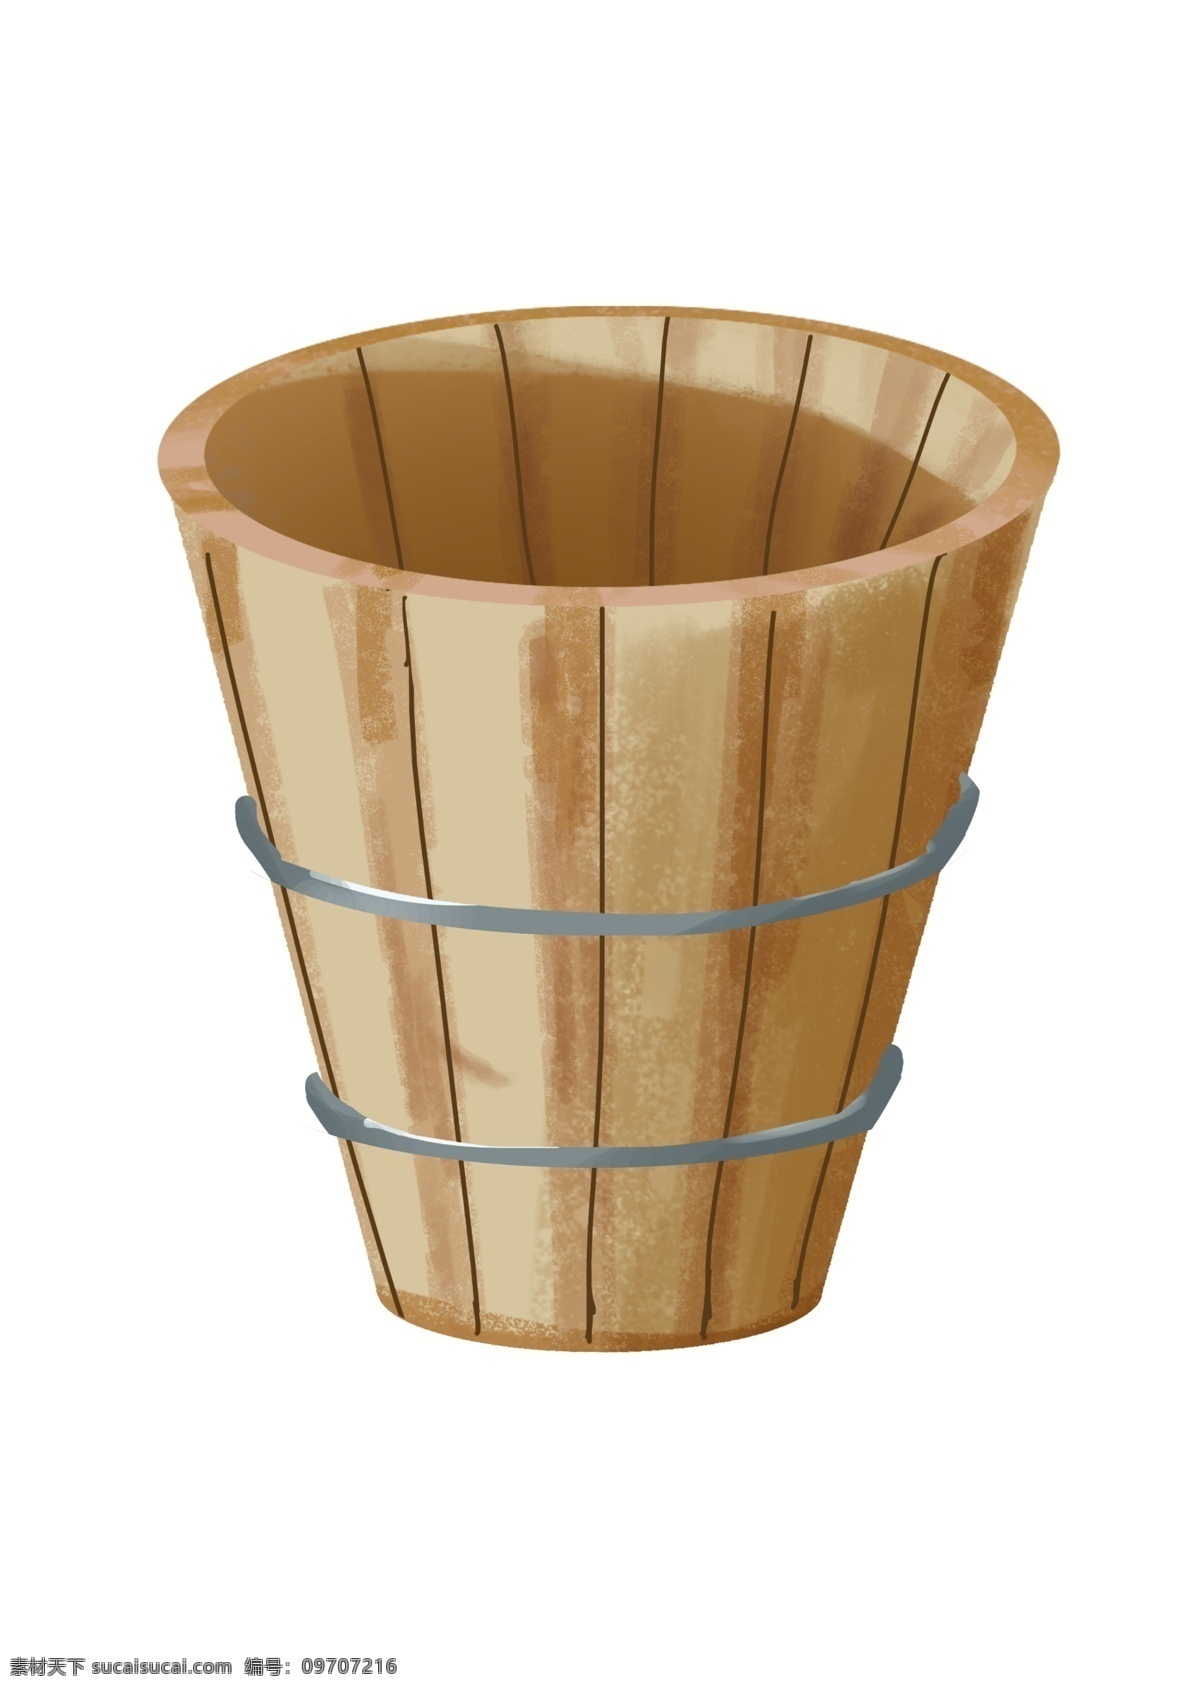 木质 水桶 卡通 插画 木质的水桶 卡通插画 木质插画 木头 木块 木材 木料 木质产品 圆圆的水桶